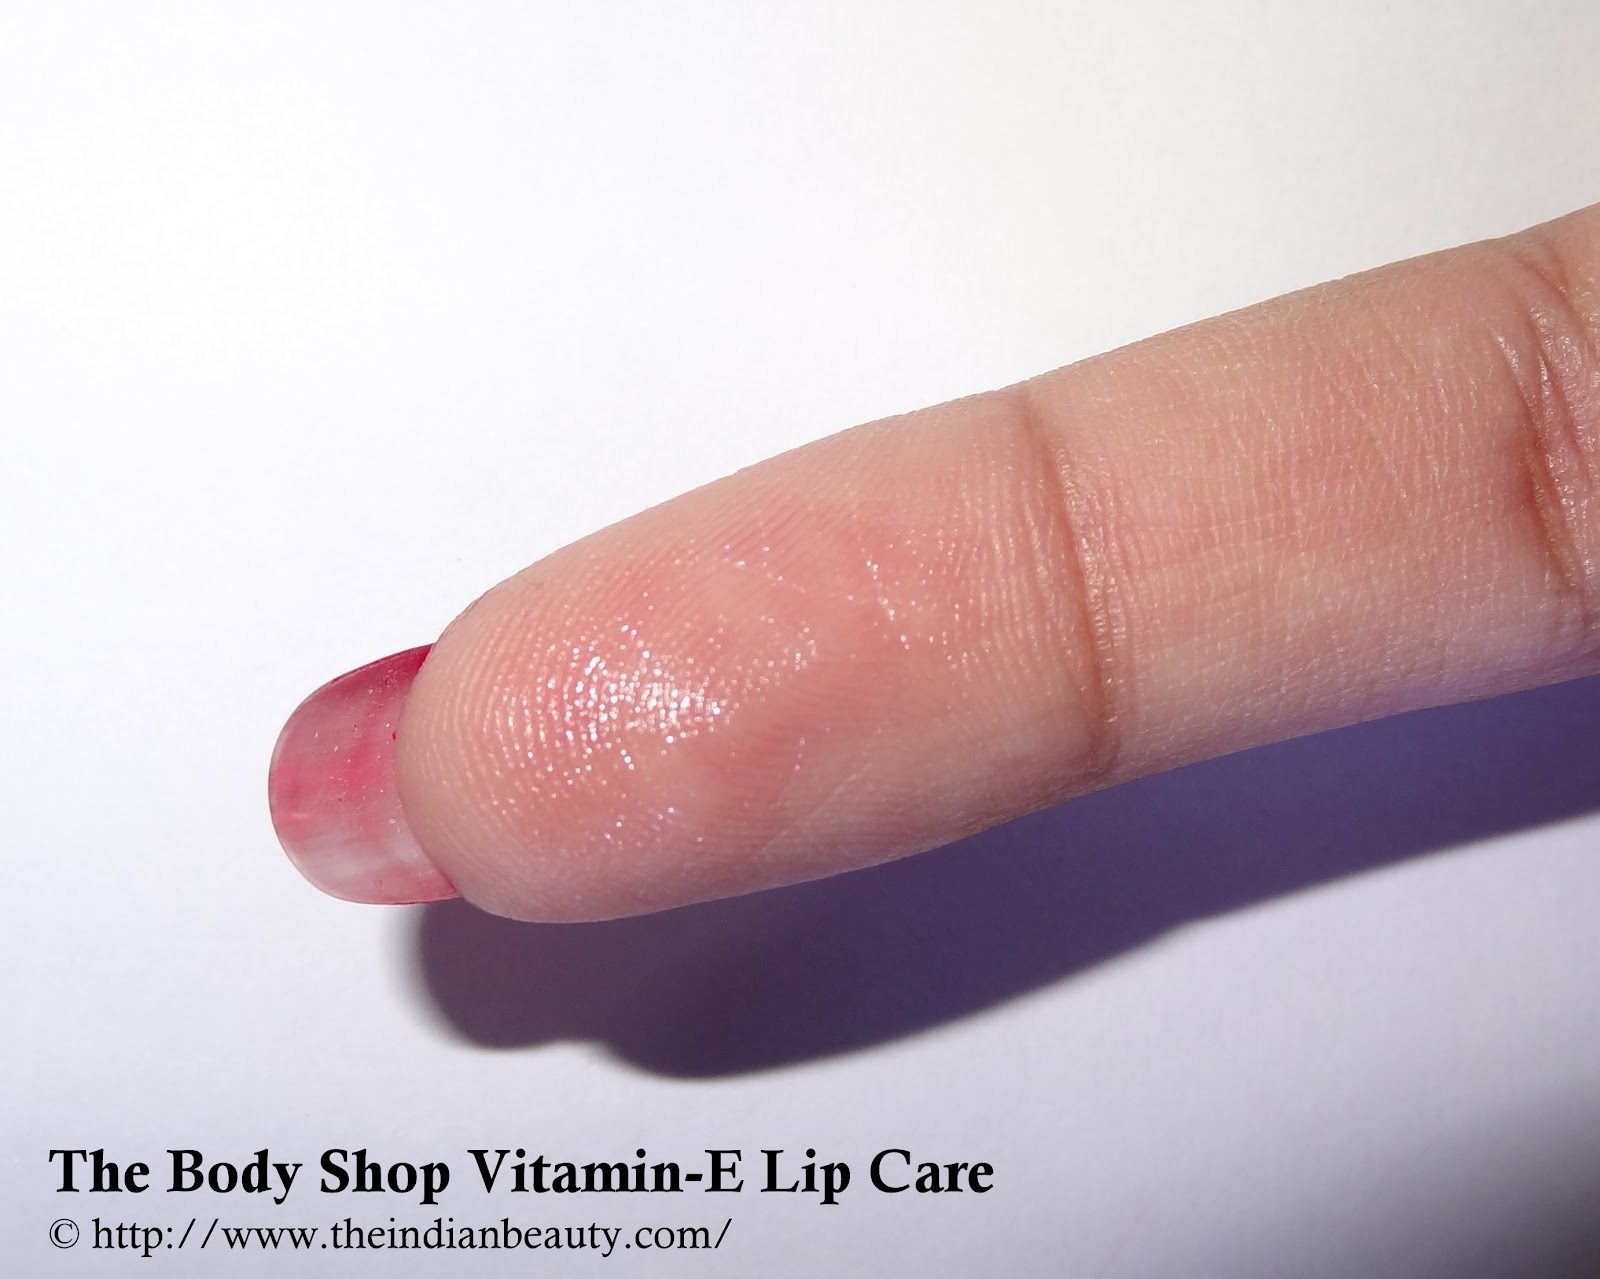 The Body Shop Vitamin E Lip Care Spf 15 Review The